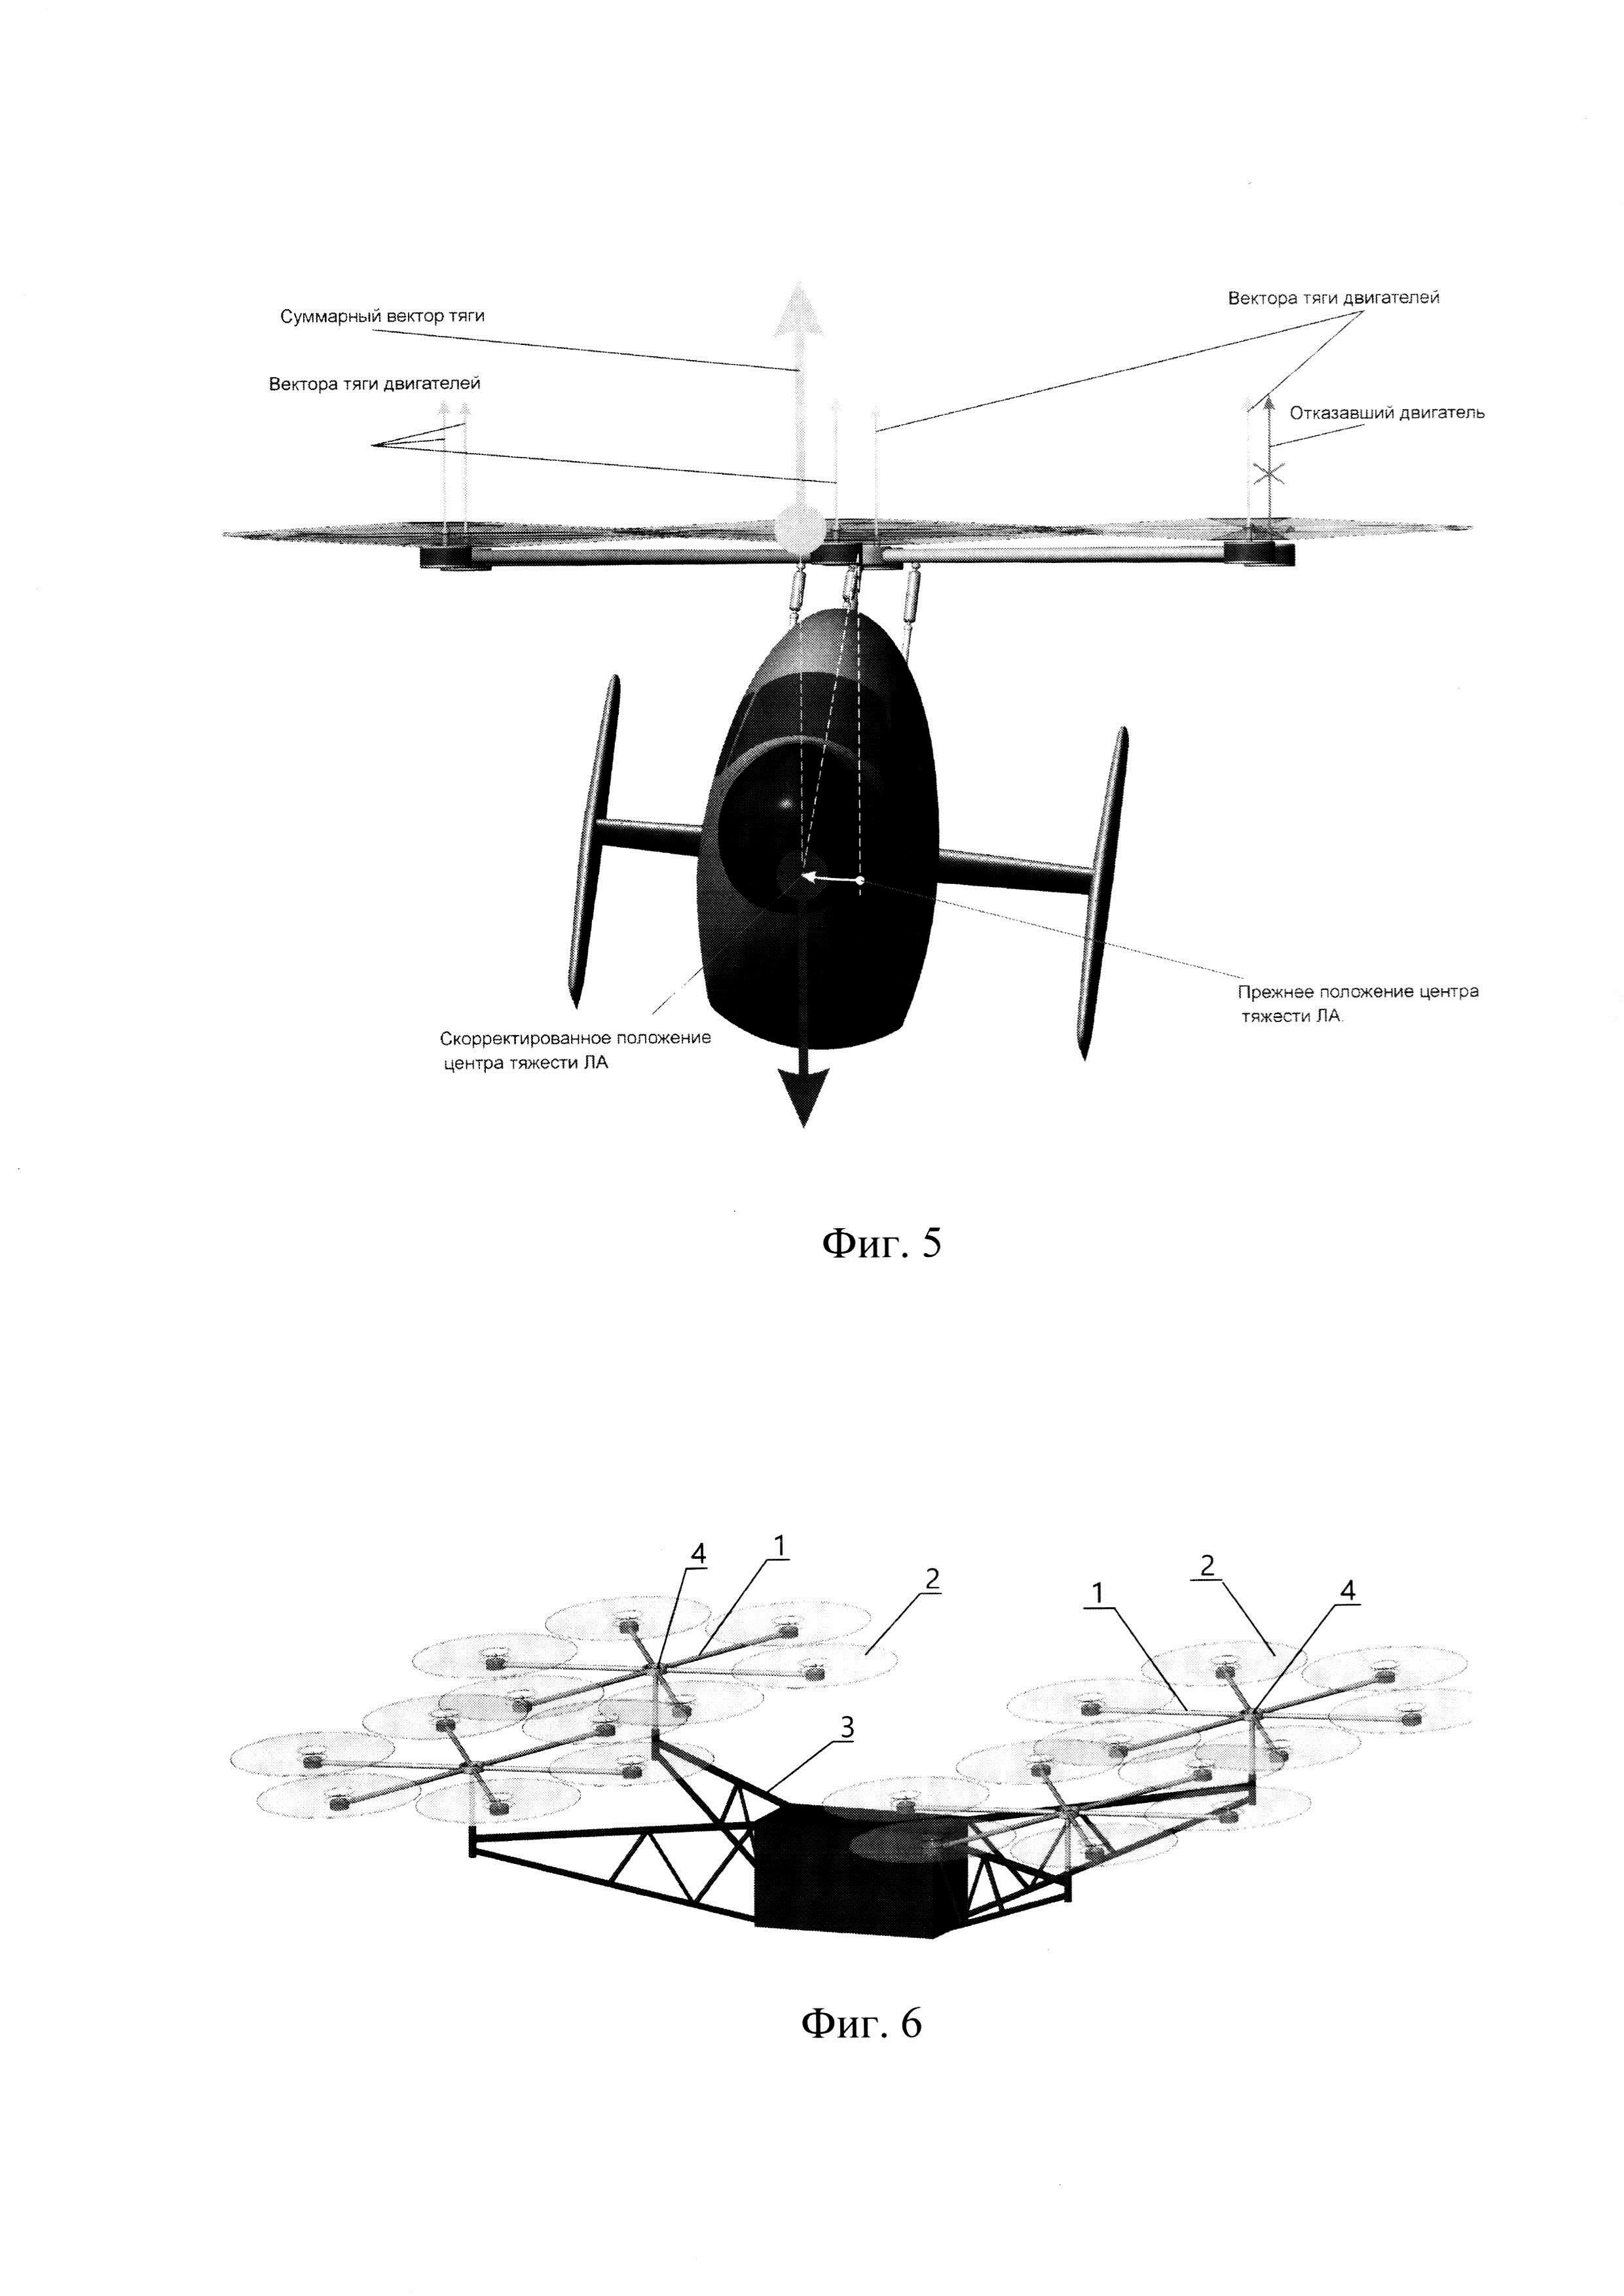 Мультироторный летательный аппарат